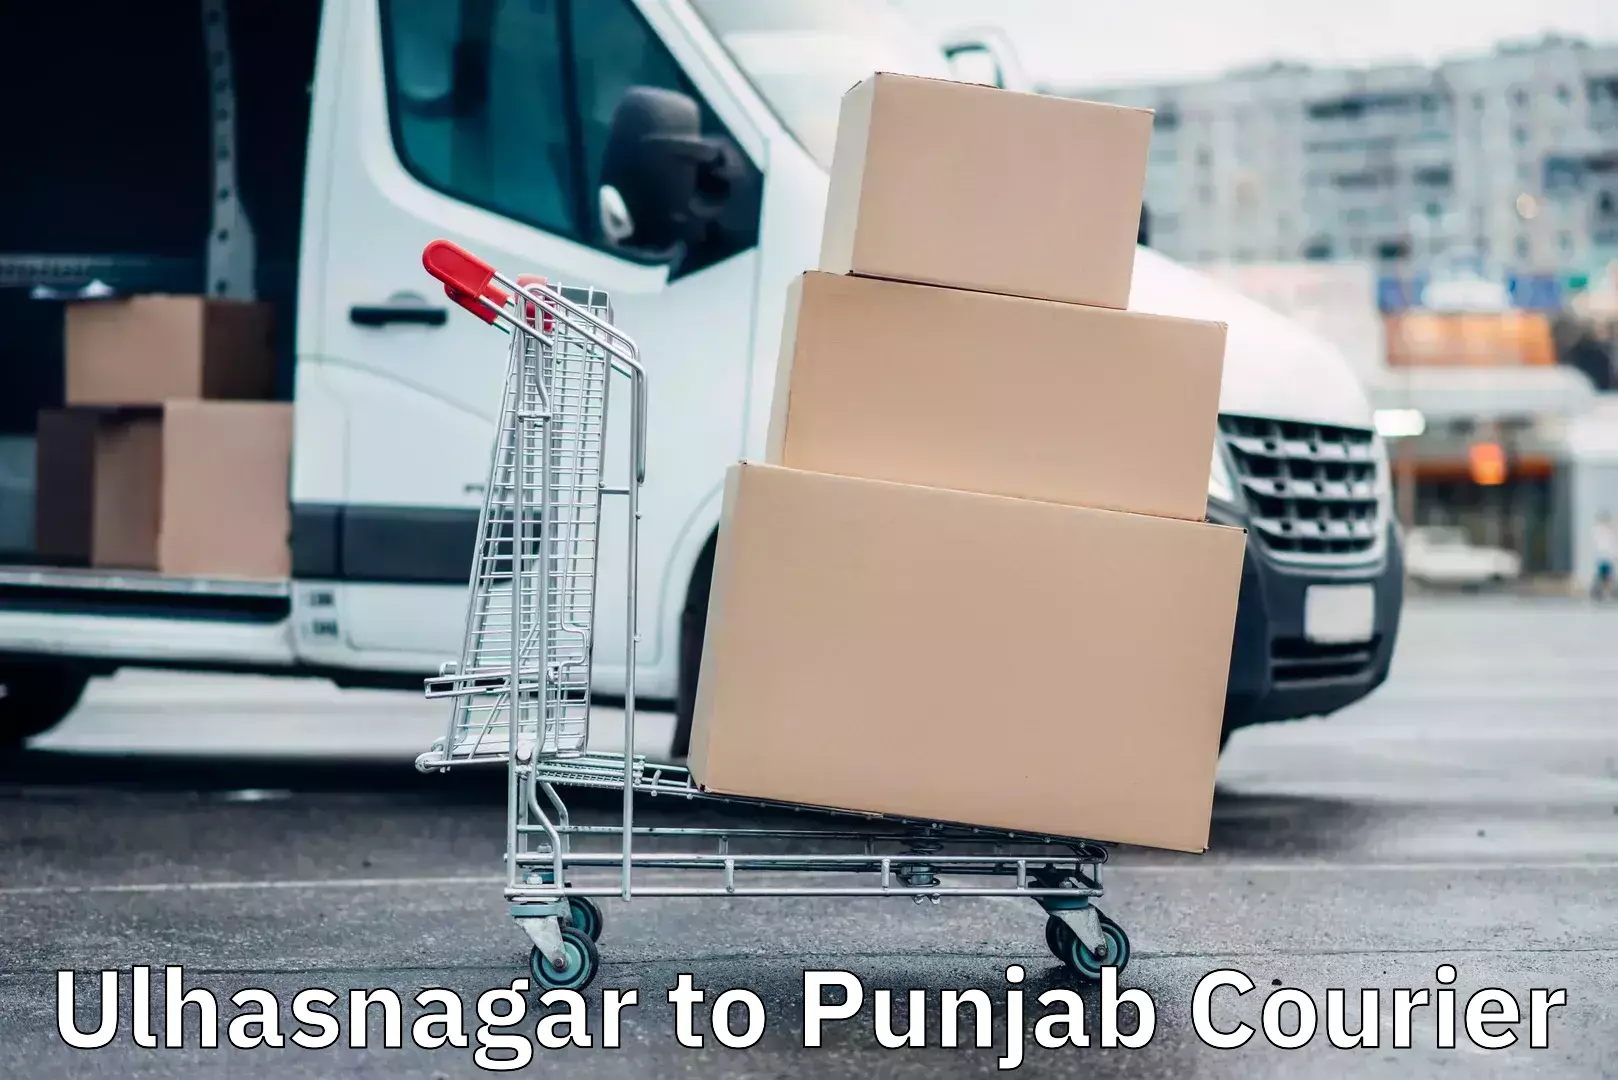 Courier service partnerships Ulhasnagar to Punjab